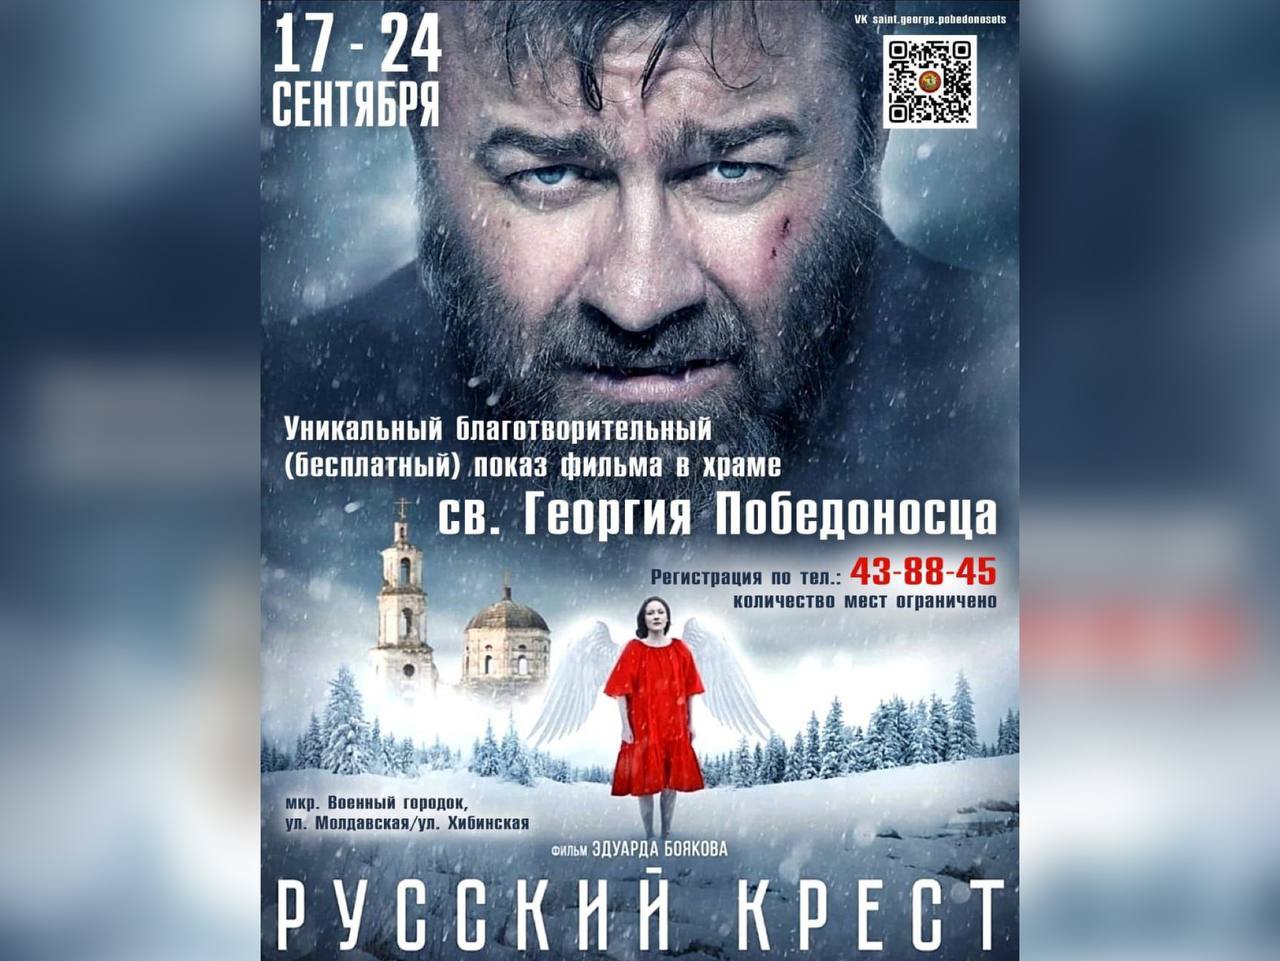 В Астрахани пройдёт благотворительный киносеанс